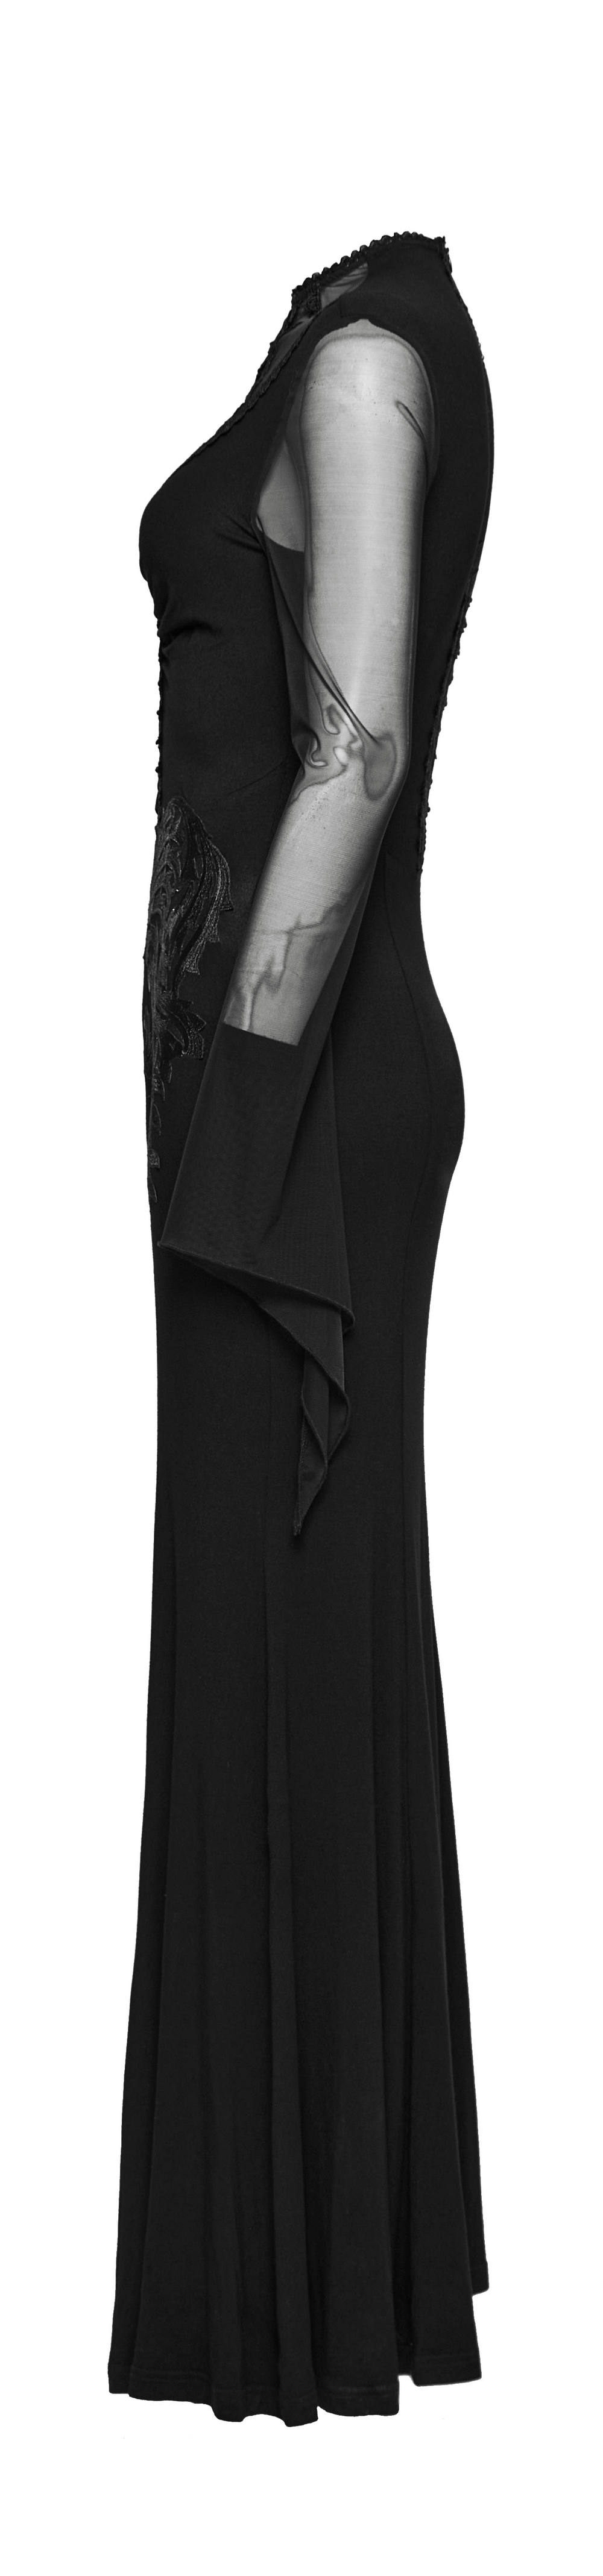 Vestido gótico de malla con encaje y bordado para mujer